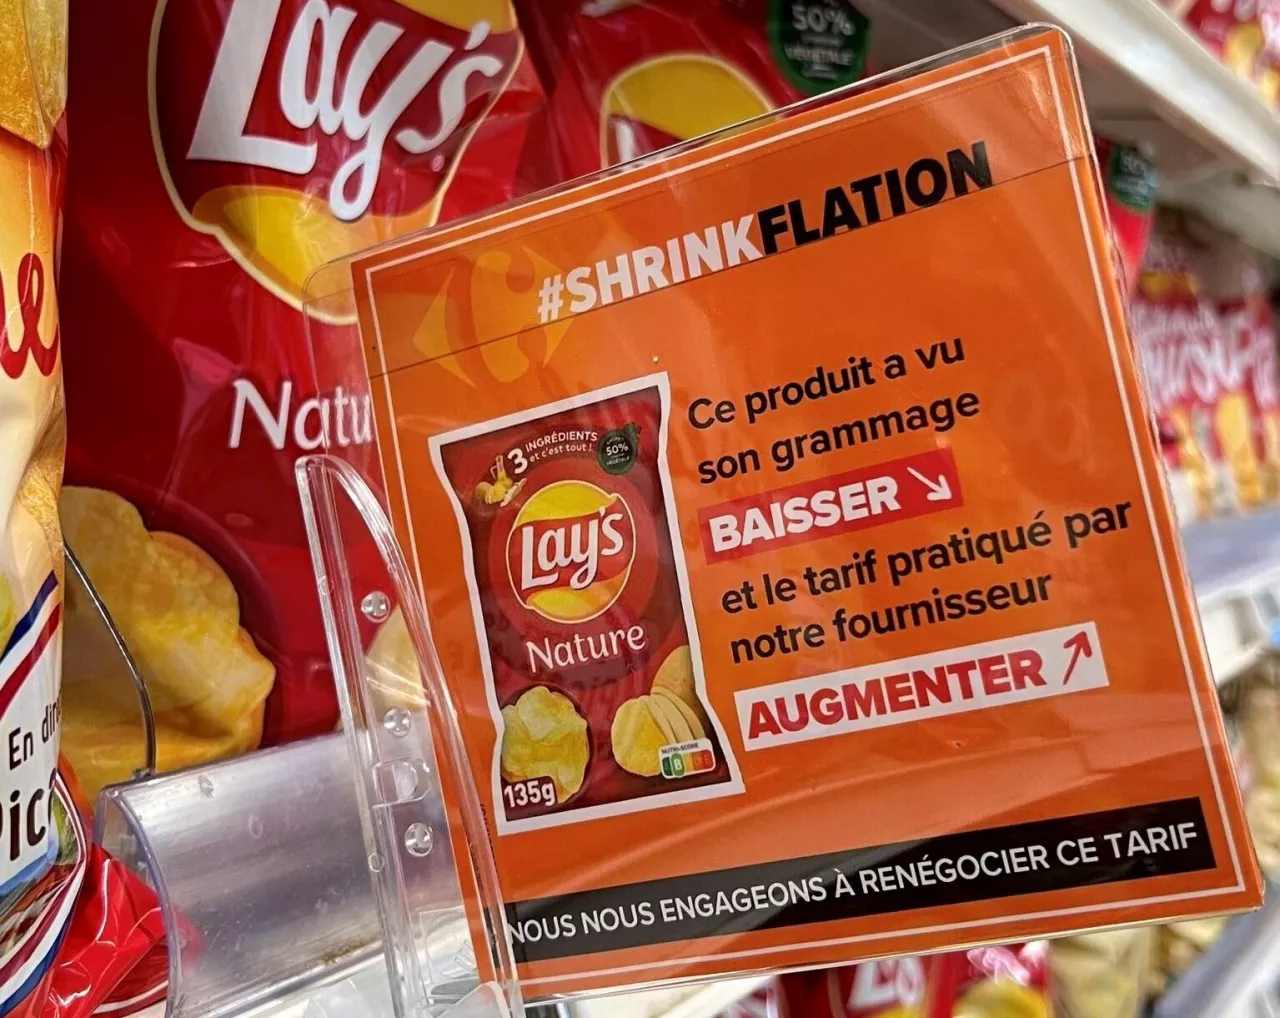 &lt;p&gt;Carrefour walczy ze shrinkflacją (fot. Carrefour)&lt;/p&gt;